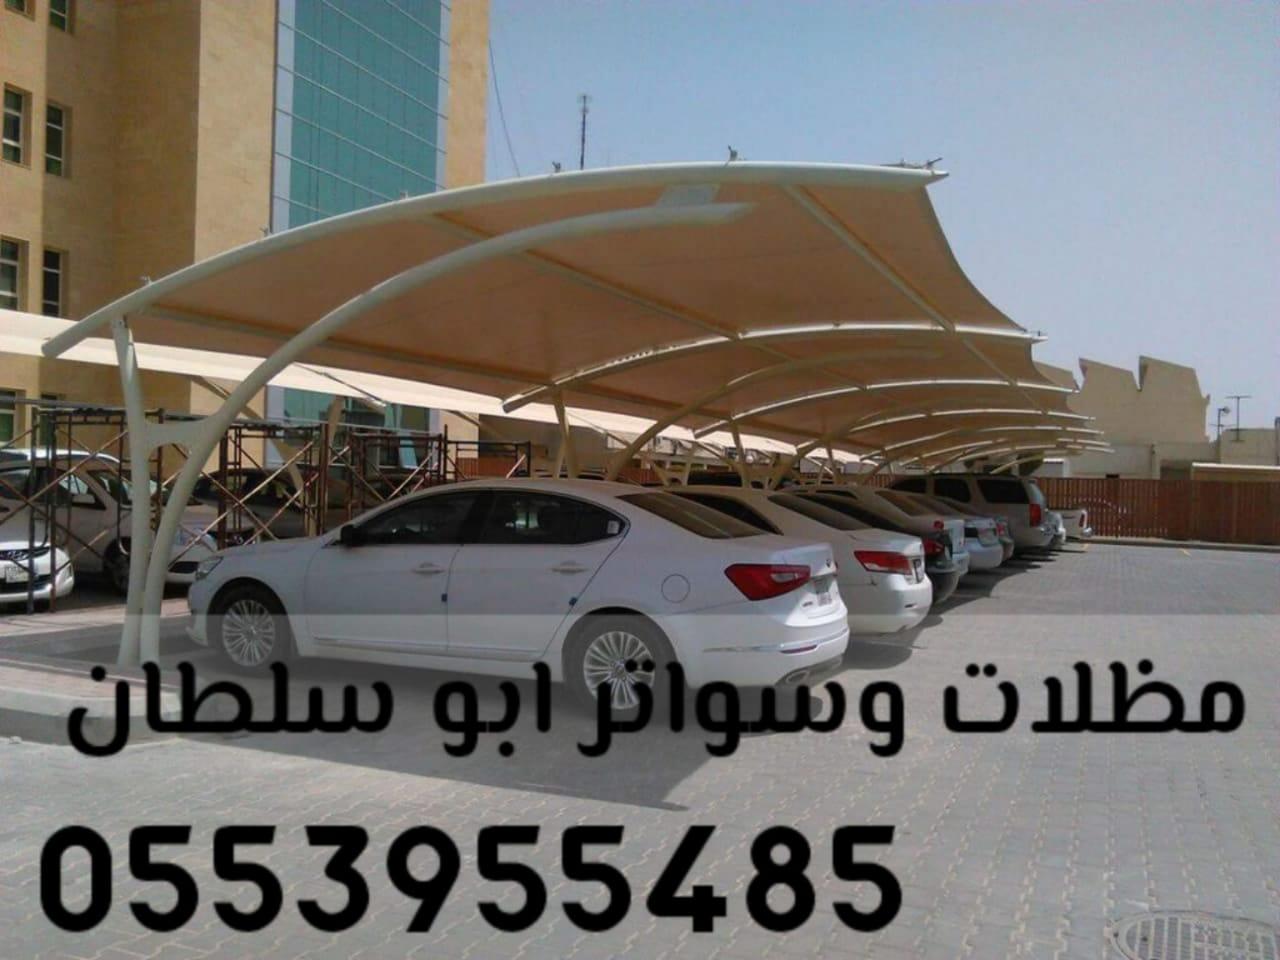 مظلات الرياض , احدث و اجود انواع مظلات , مظلات بافضل سعر في الرياض , 0553955485 703218335